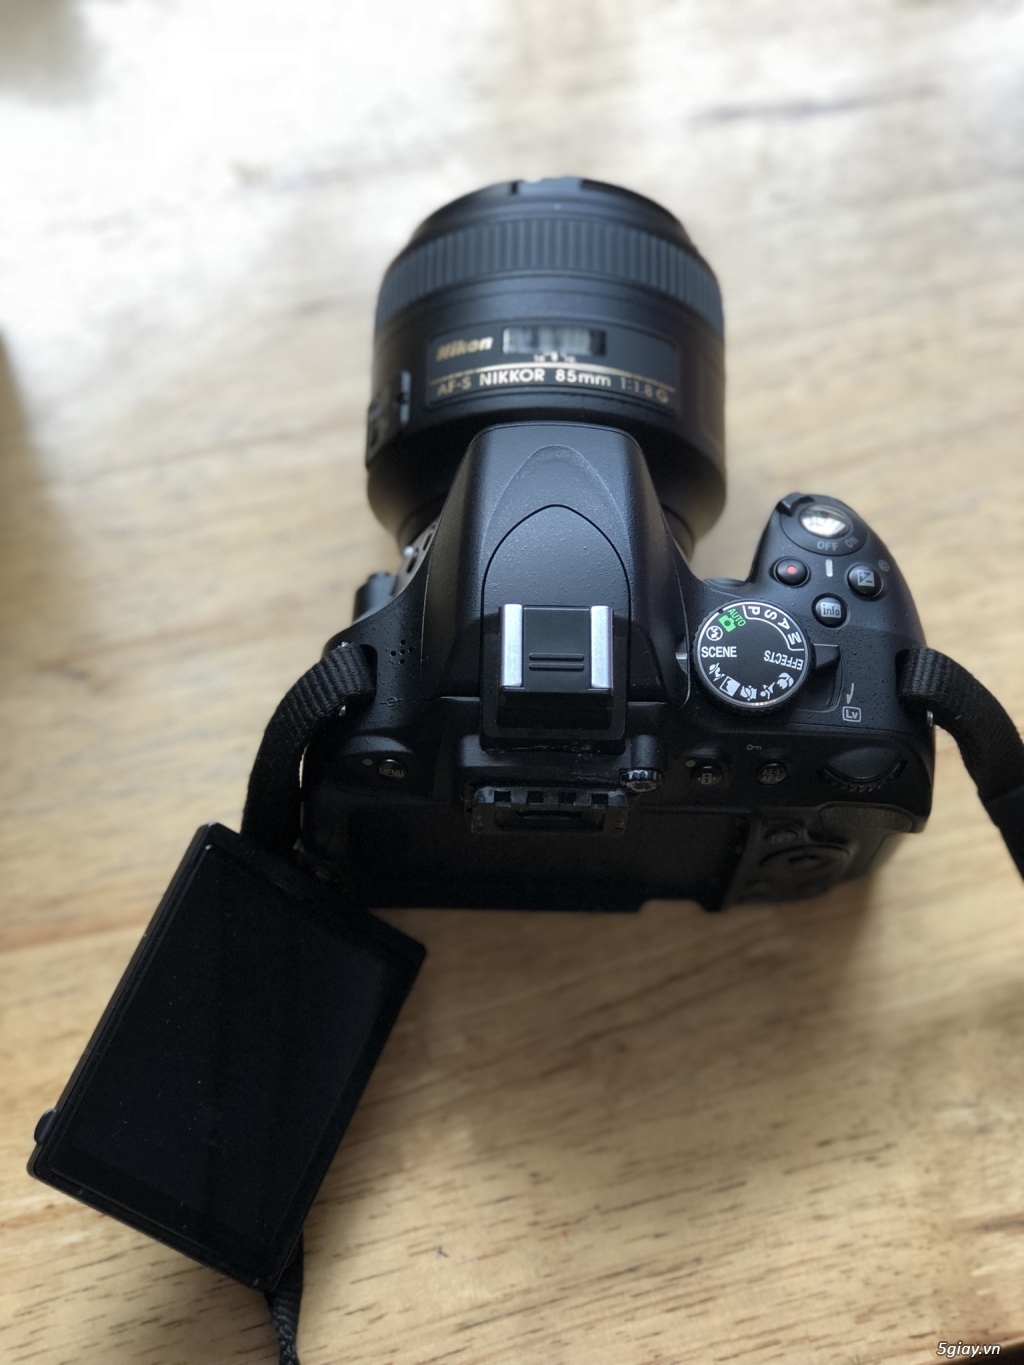 Trọn bộ Nikon D5100 len kit và lens 85+35mm